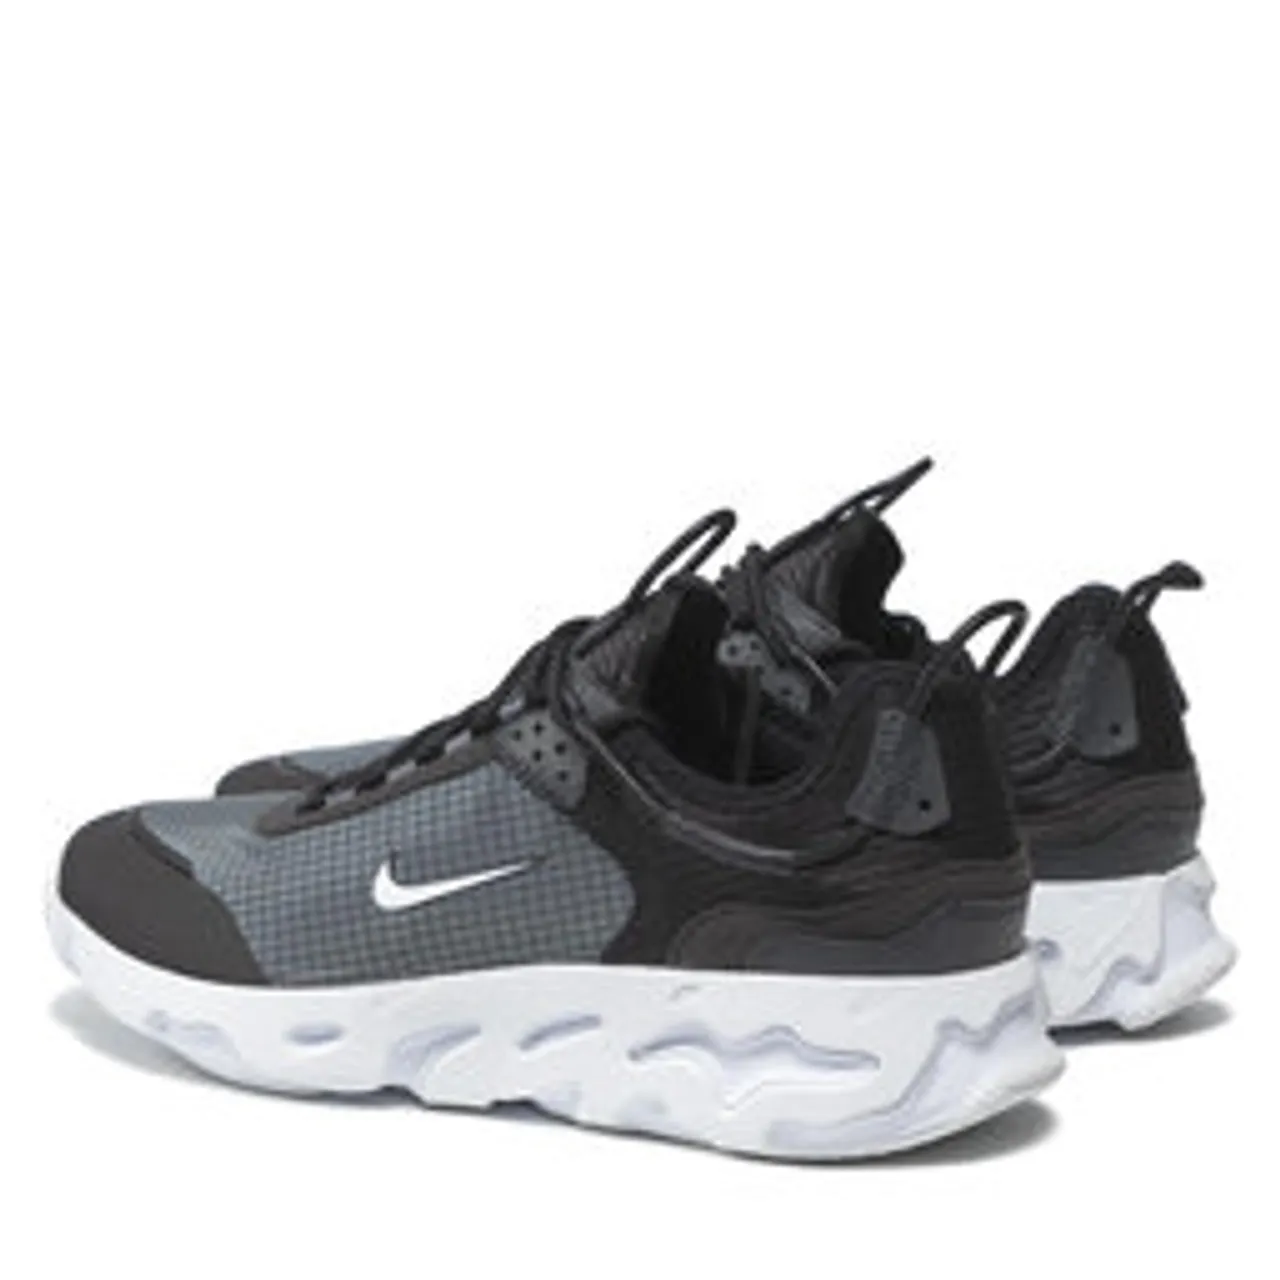 Schuhe Nike React Live CV1772 003 Black/White/Dk Smoke Grey